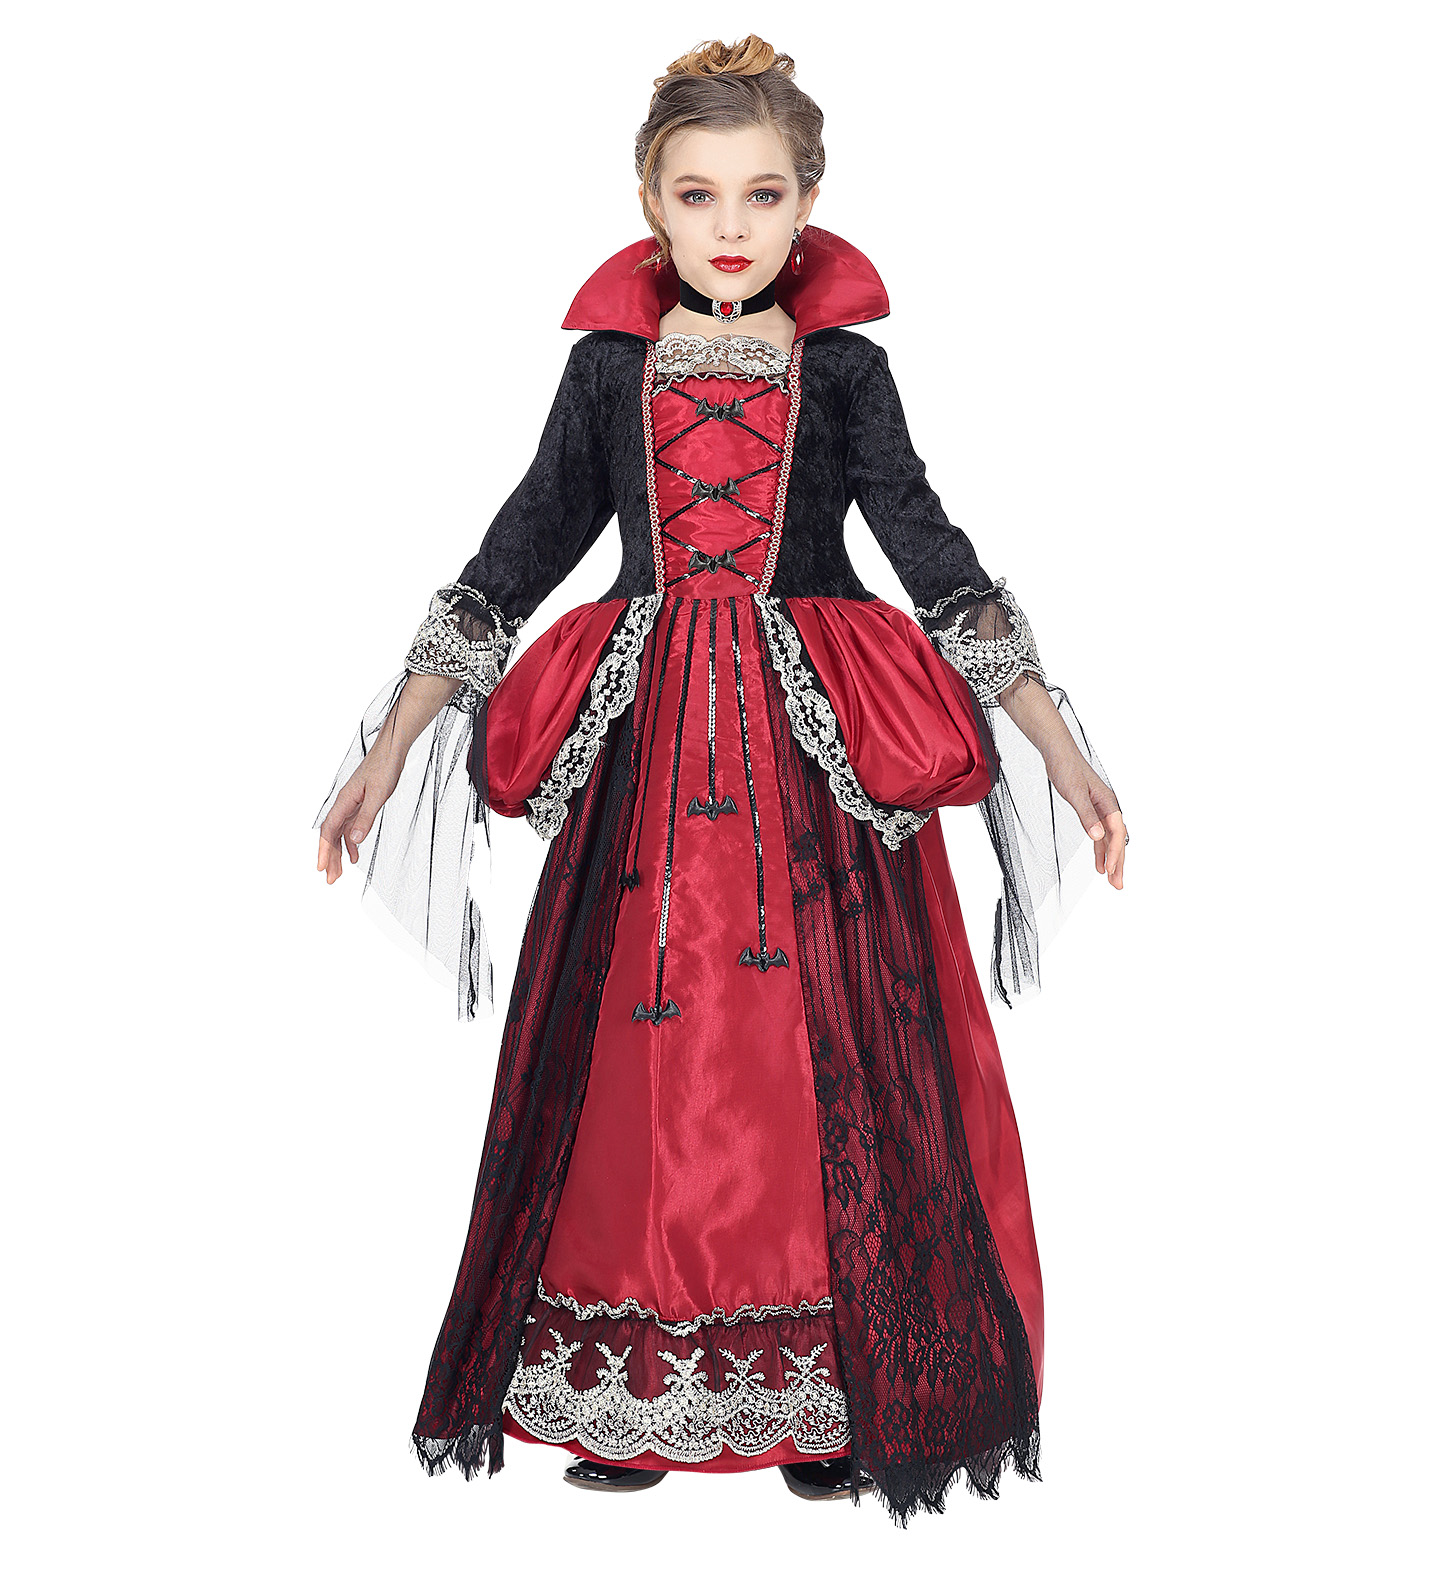 Kids Deluxe Vampiress Costume